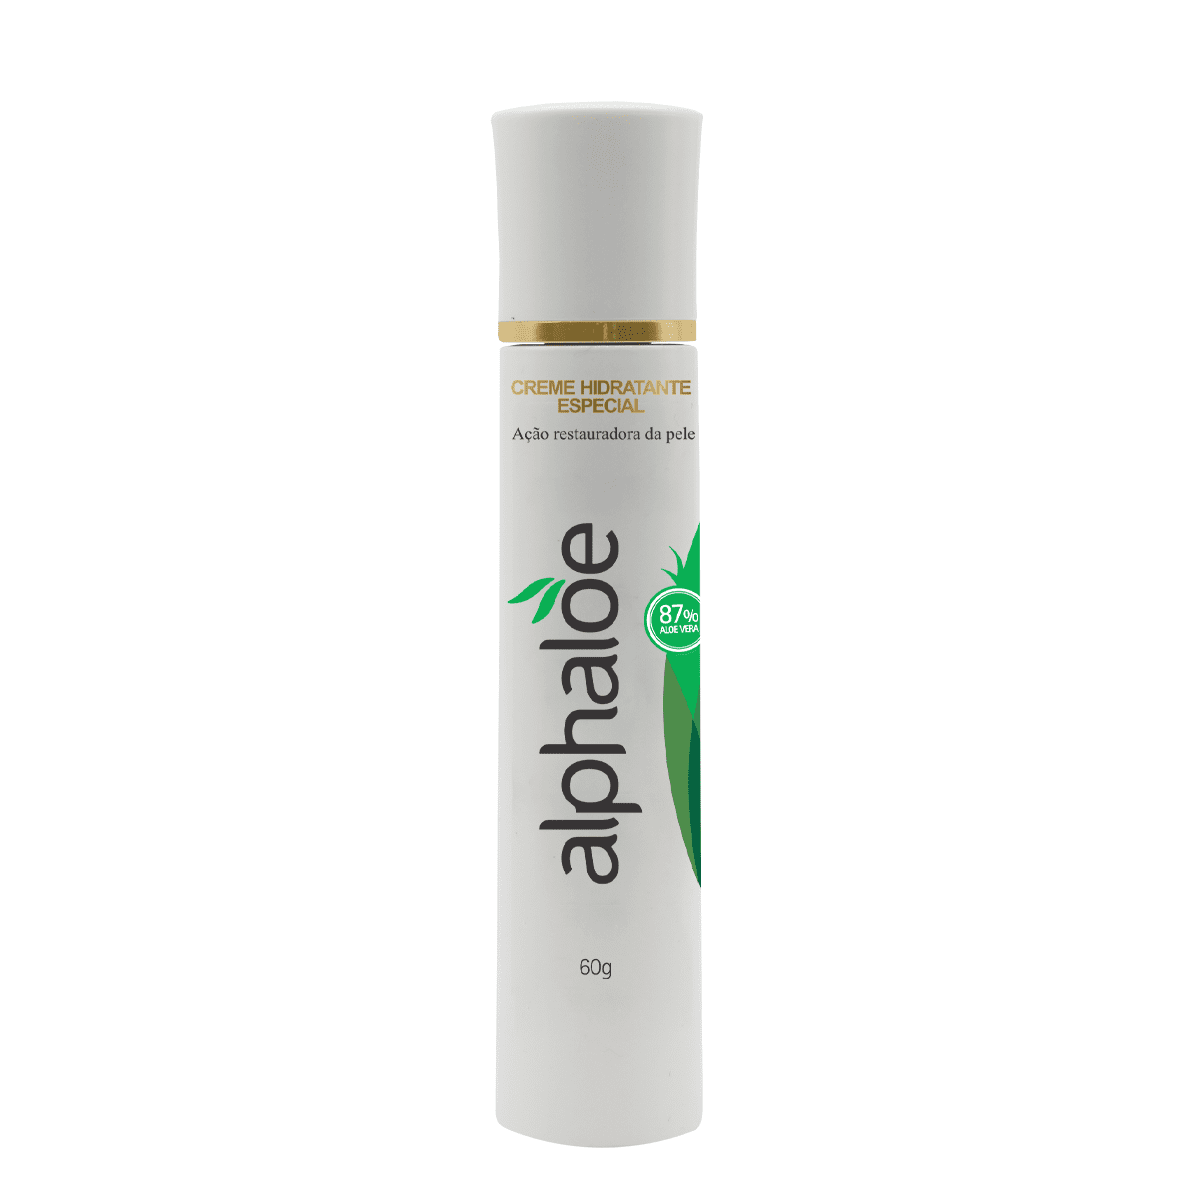 Creme Hidratante Especial de Aloe Vera Alphaloe (87% de Babosa) 60g